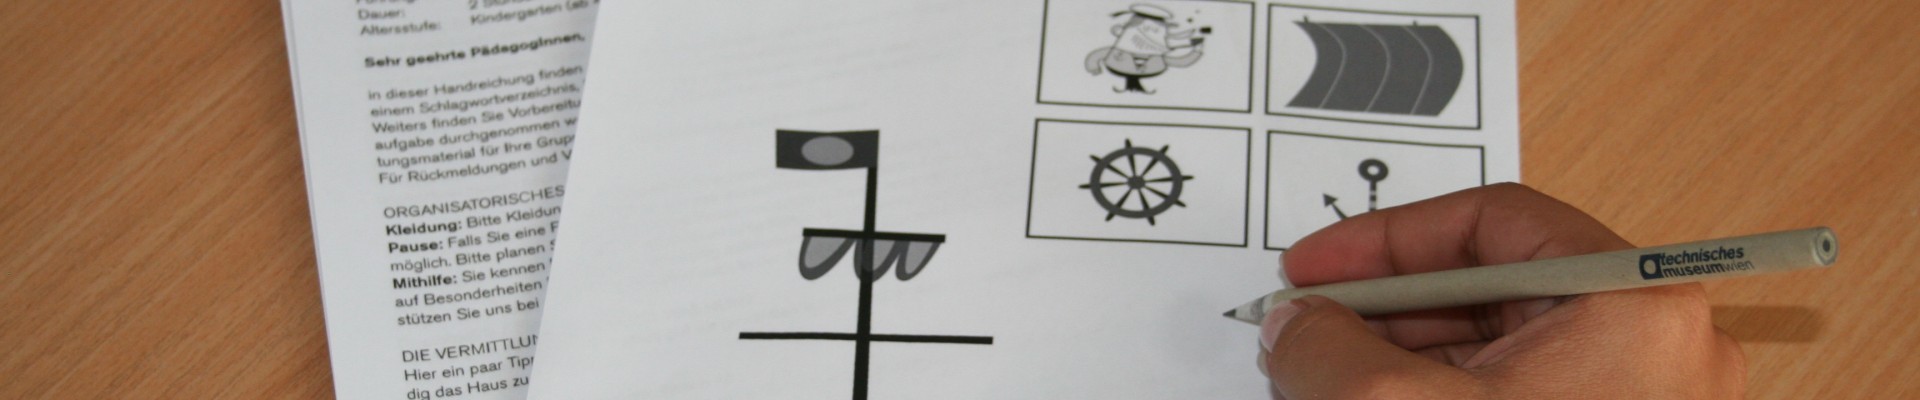 : Kinderhand beim Ausfüllen eines Papierbogens, auf dem die Illustration eines Schiffes abgebildet ist.